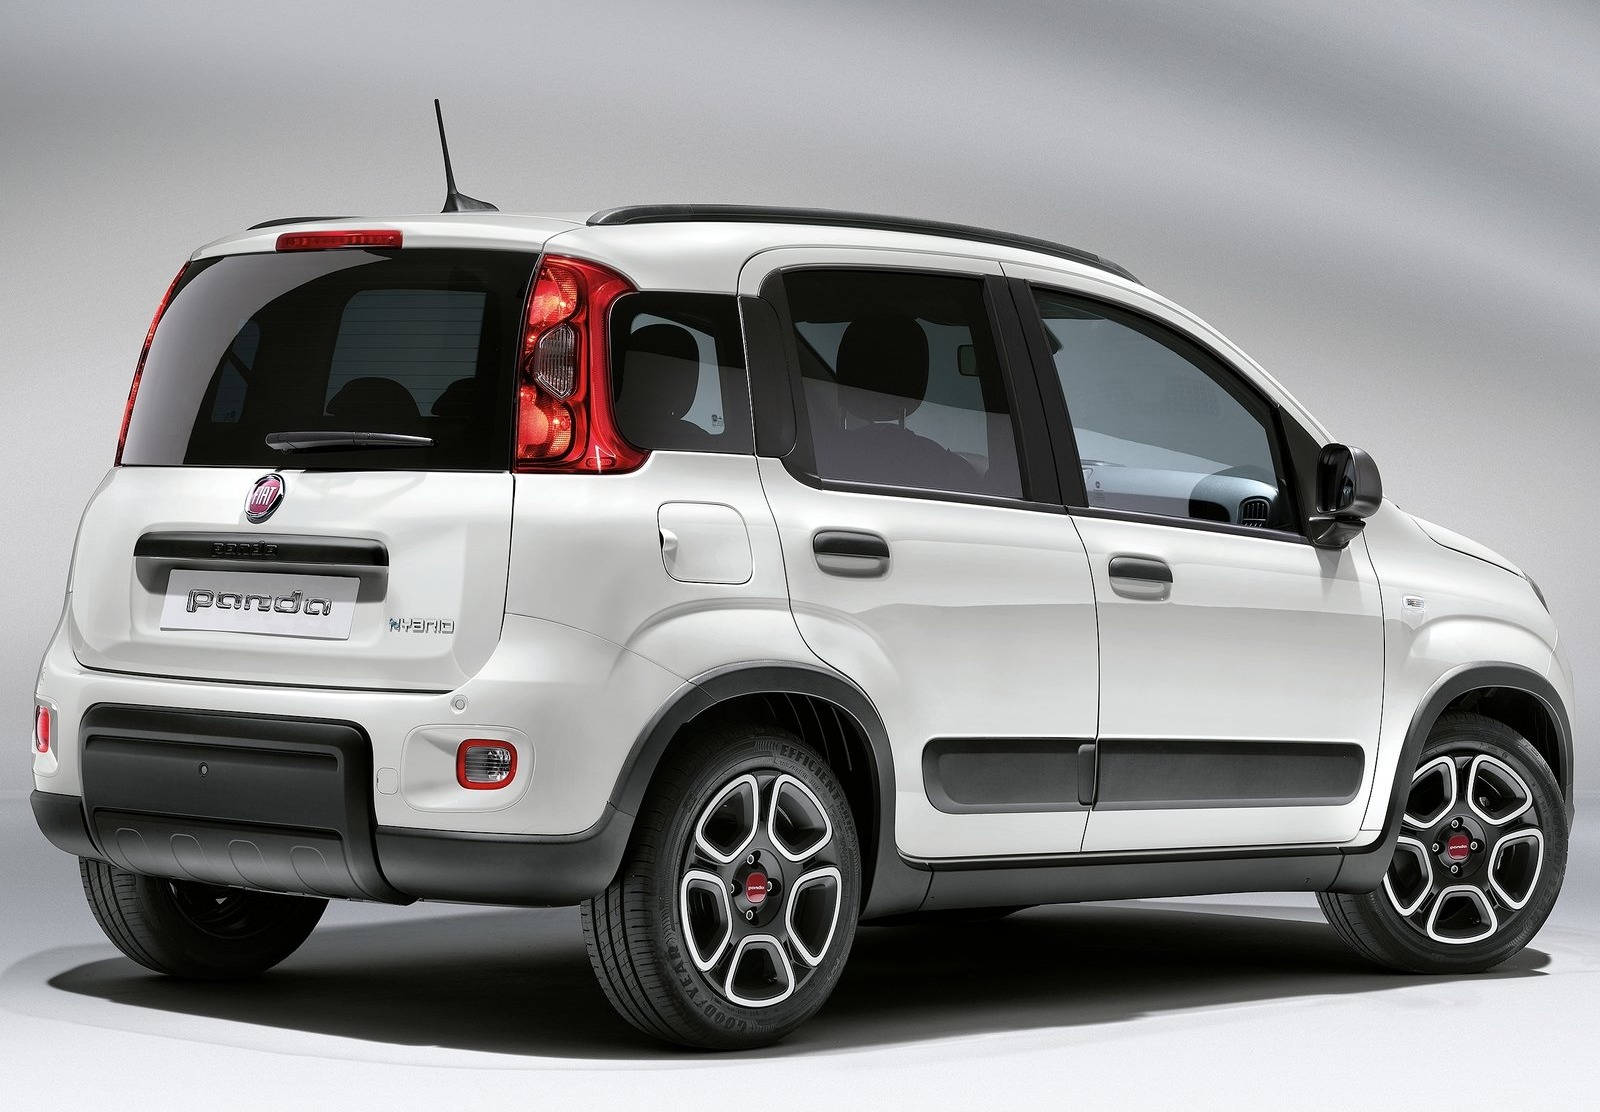 FIAT Panda: dimensioni, interni, motori, prezzi e concorrenti - AutoScout24